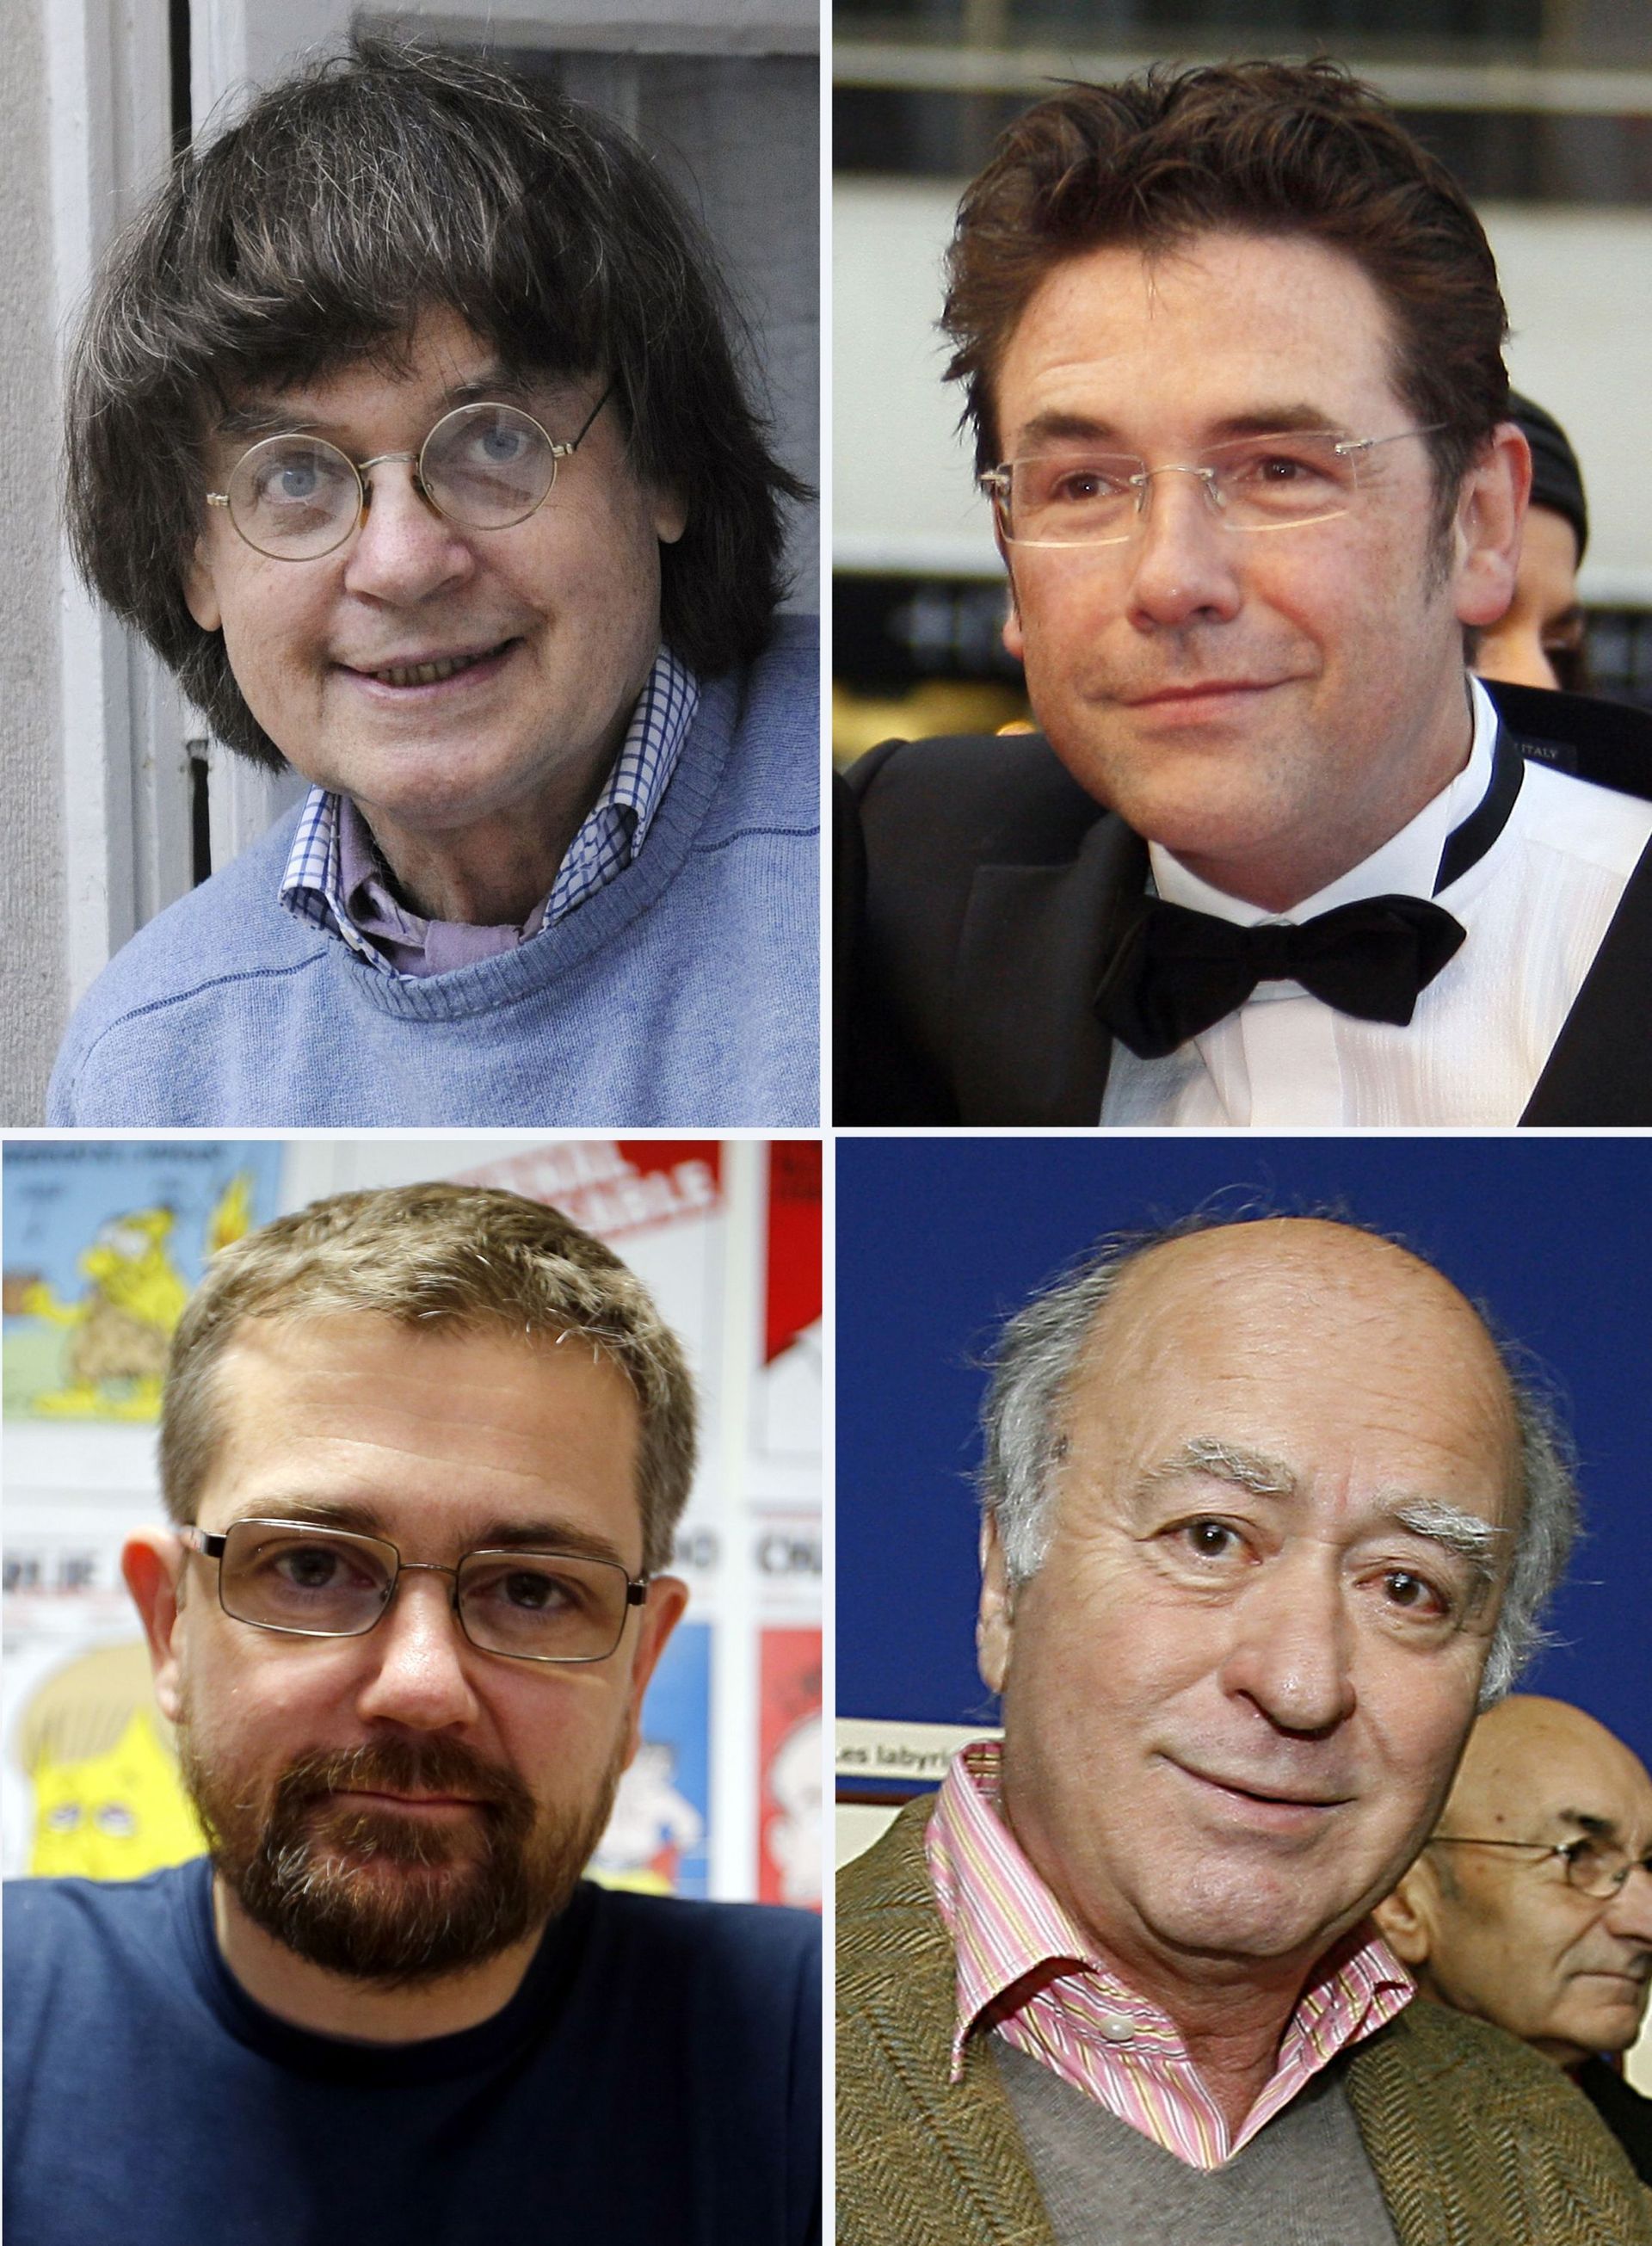 De gauche à droite et de haut en bas : Cabu, Tignous, Charb et Wolinski.